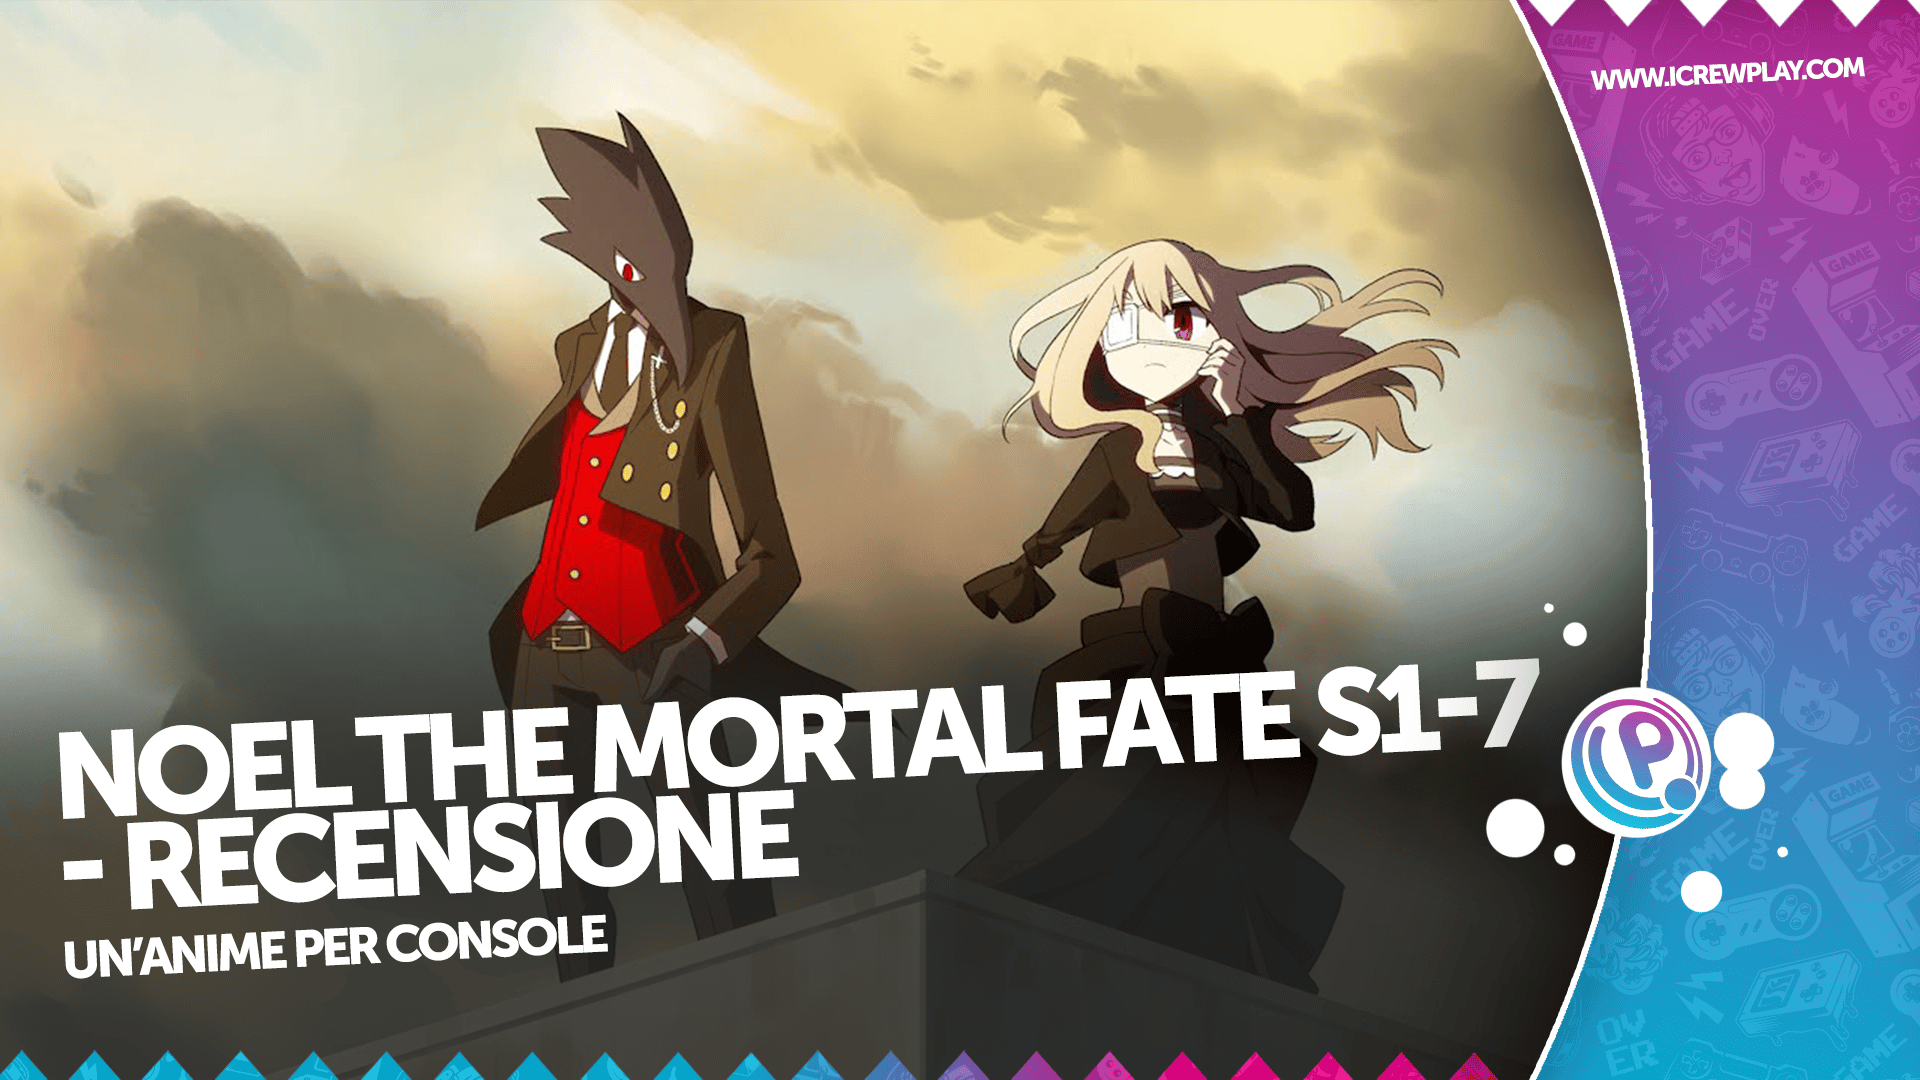 Noel The Mortal Fate S1-7 - Recensione per Nintendo Switch 2